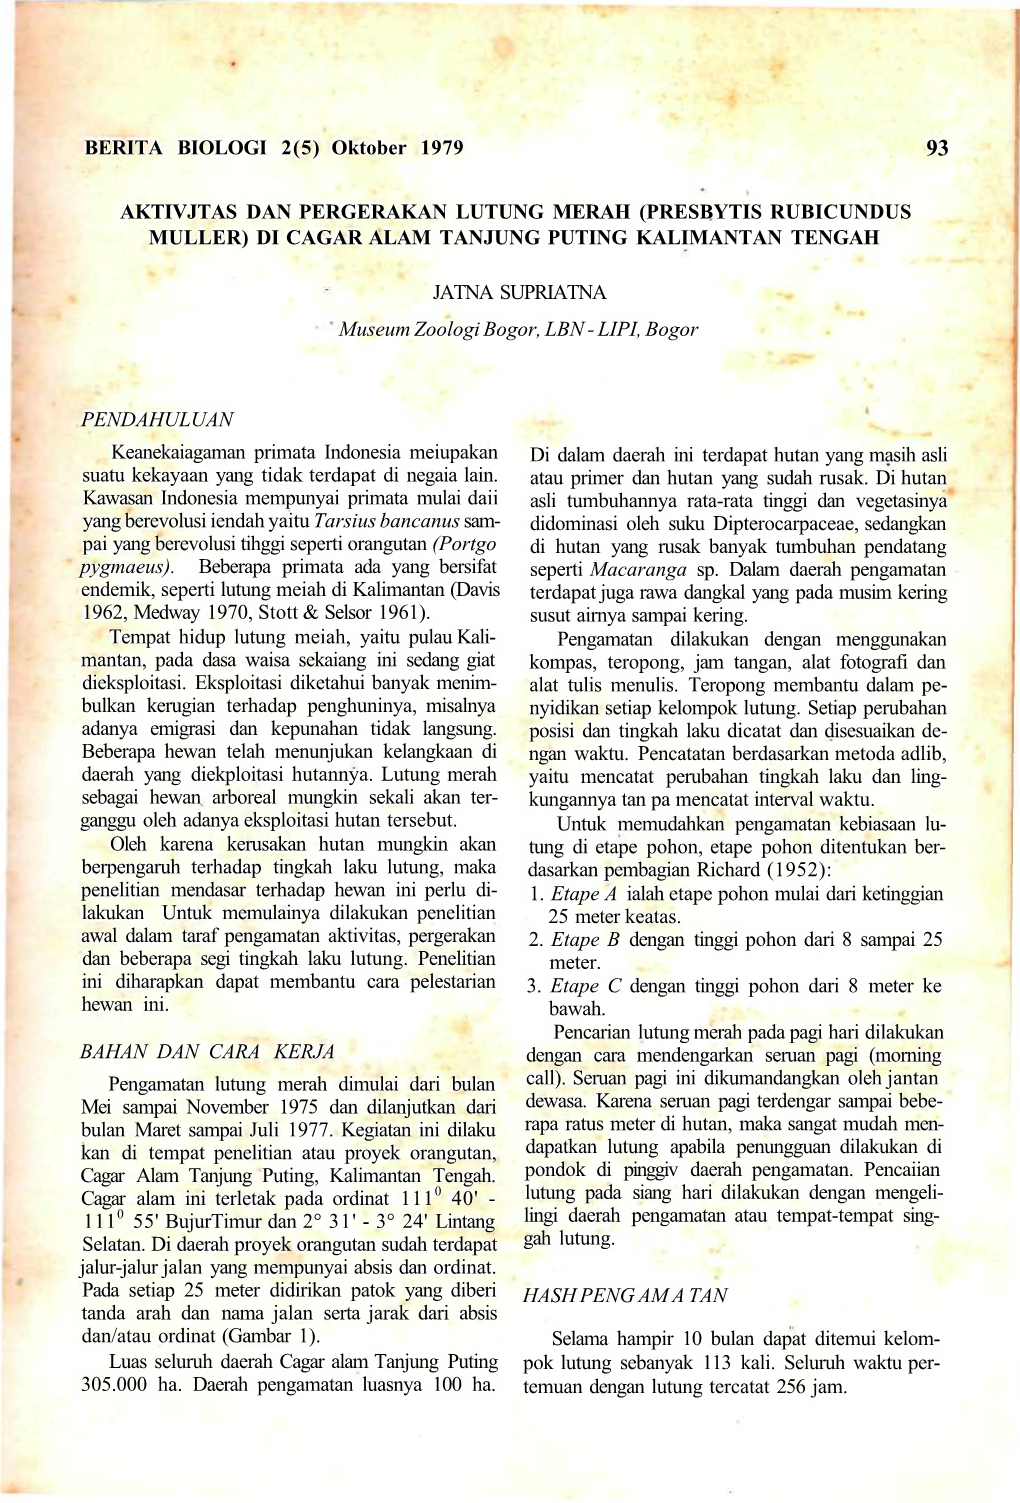 BERITA BIOLOGI 2(5) Oktober 1979 AKTIVJTAS DAN PERGERAKAN